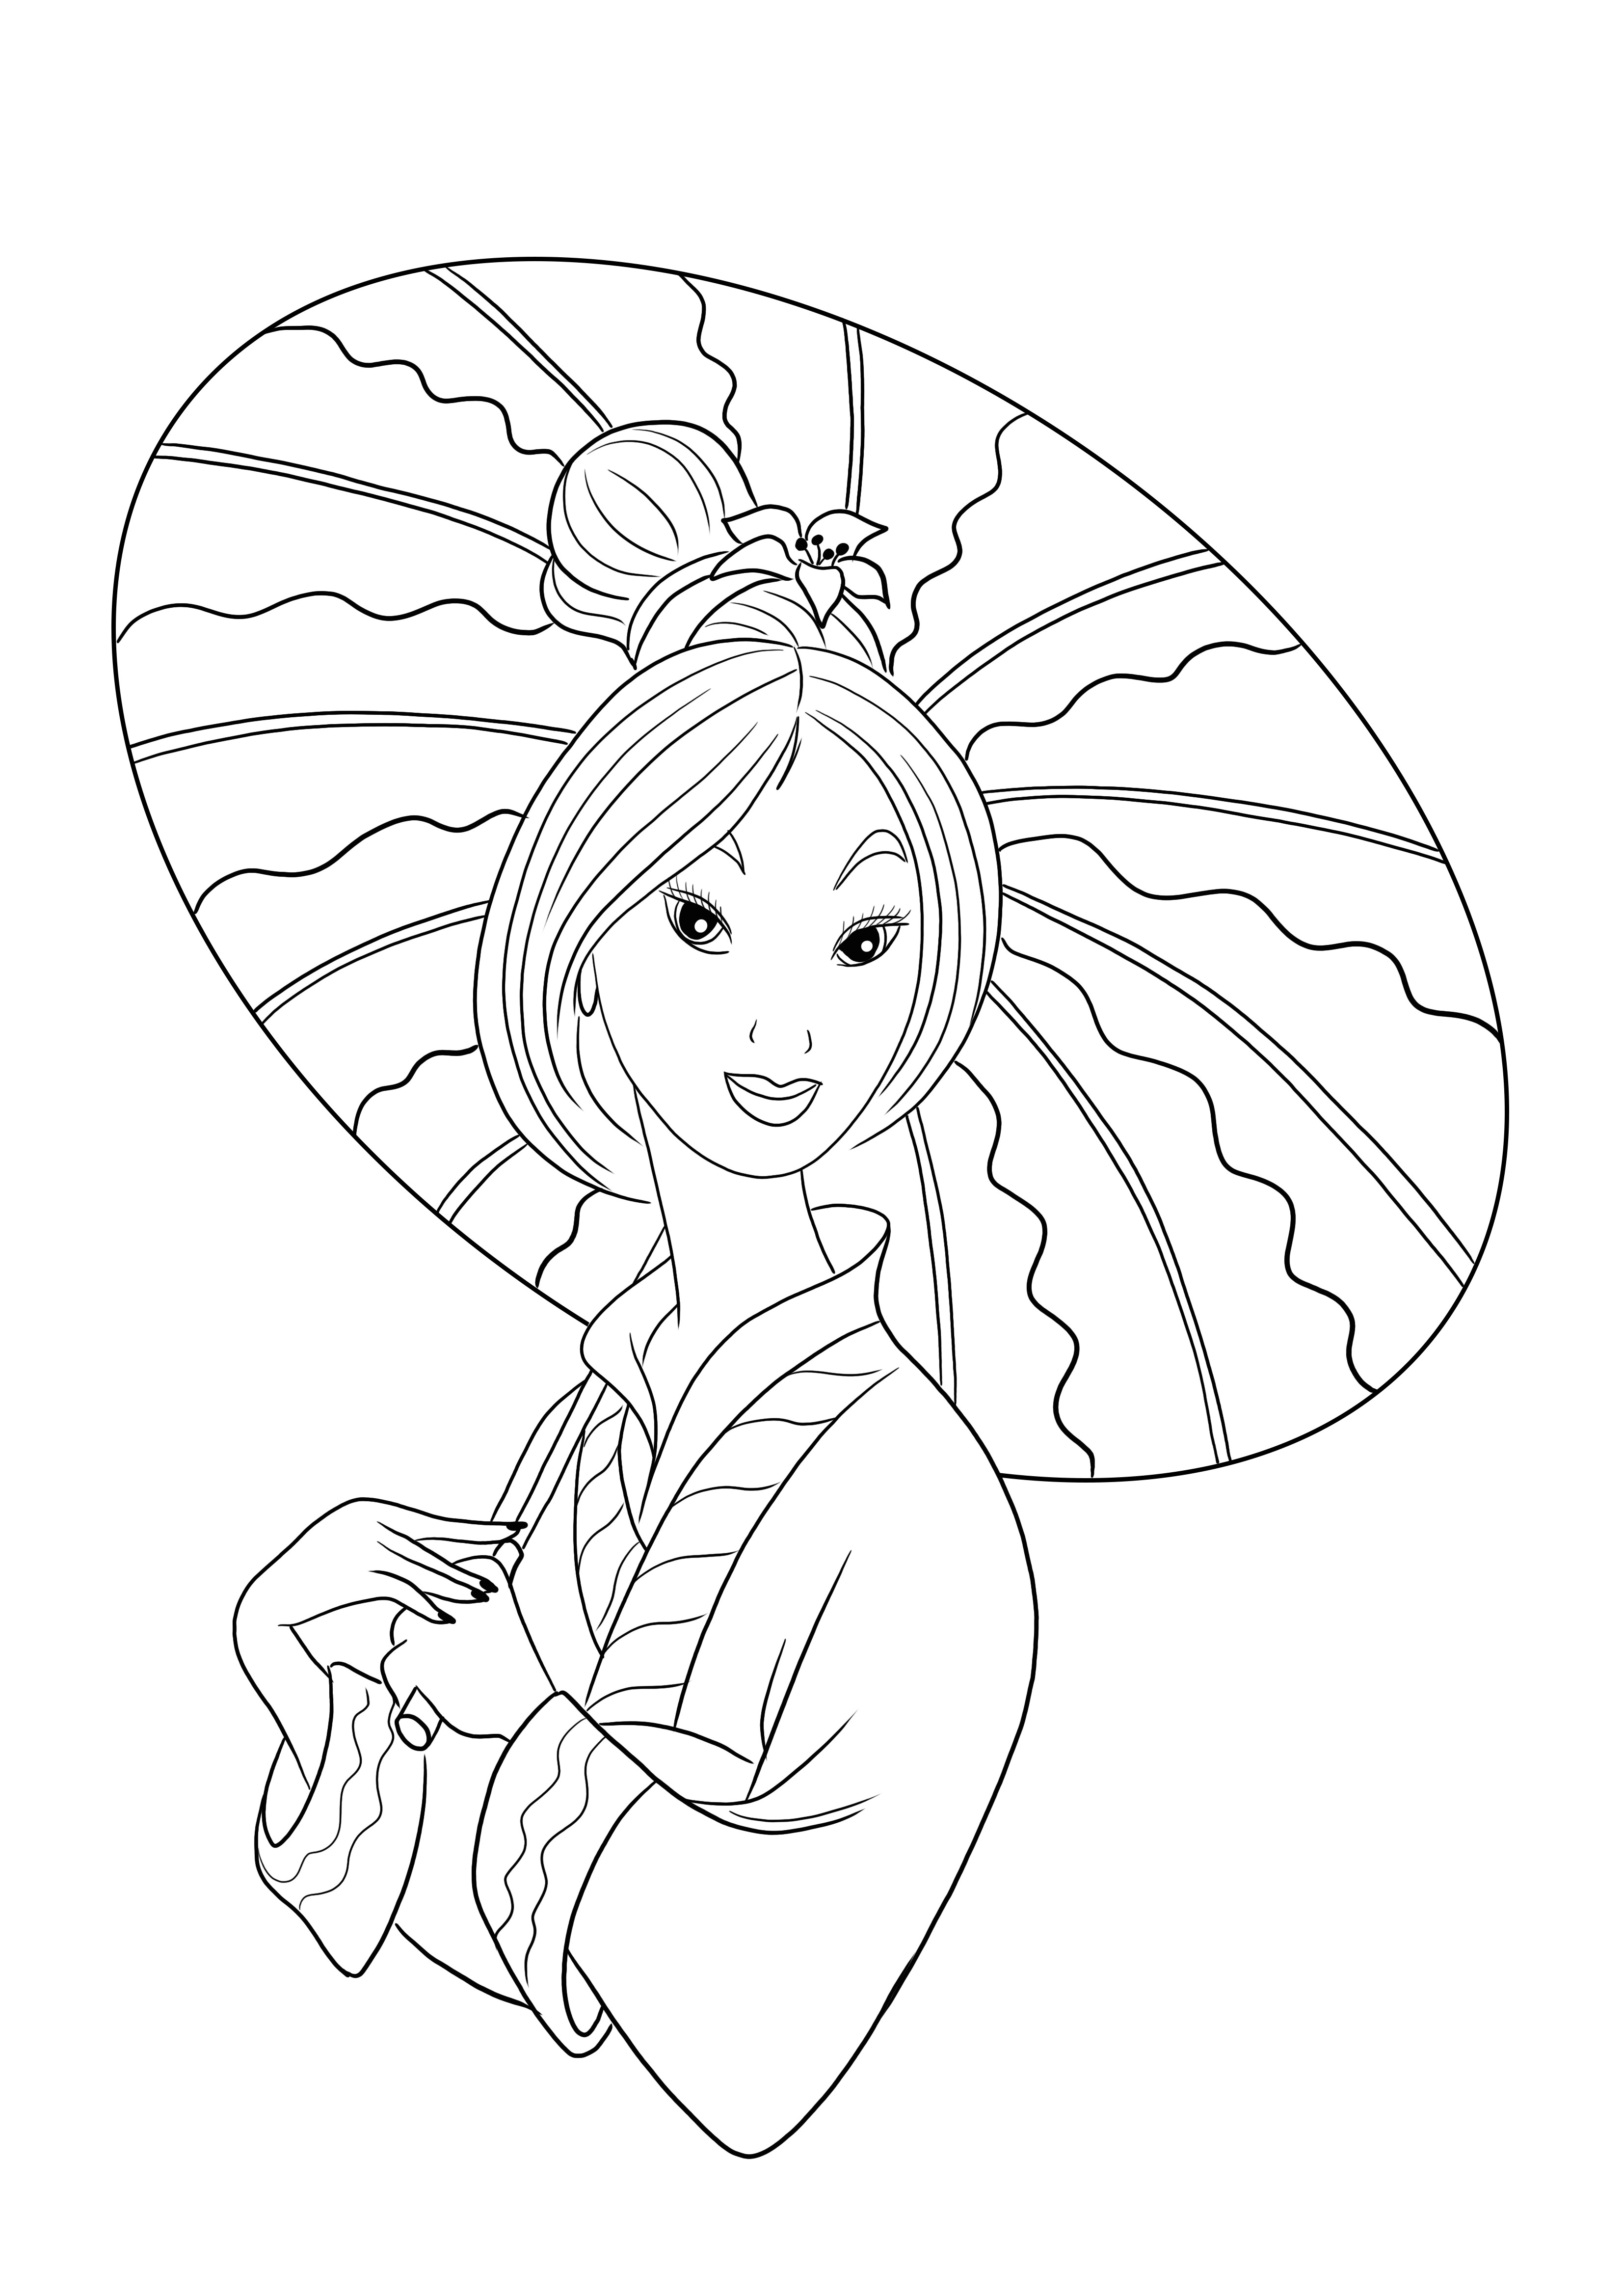 Prințesa Mulan gratuit pentru colorat și imprimare imagini pentru ca copiii să se distreze